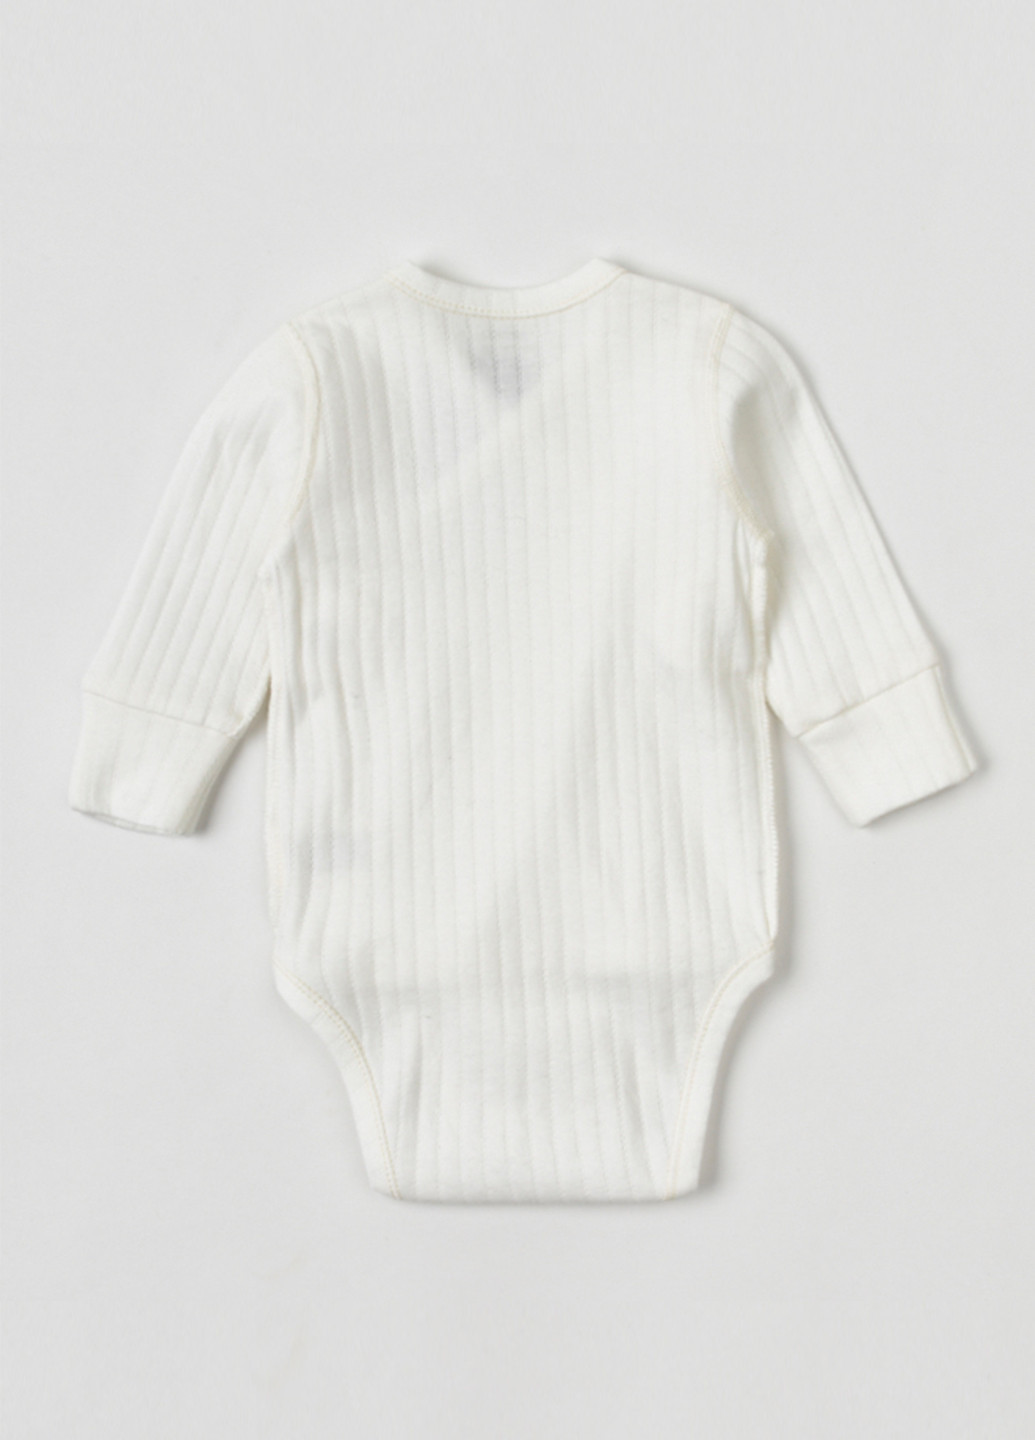 Белый демисезонный комплект для новорожденных белый "ажур" (боди, ползунки и шапочка-узелок) KRAKO